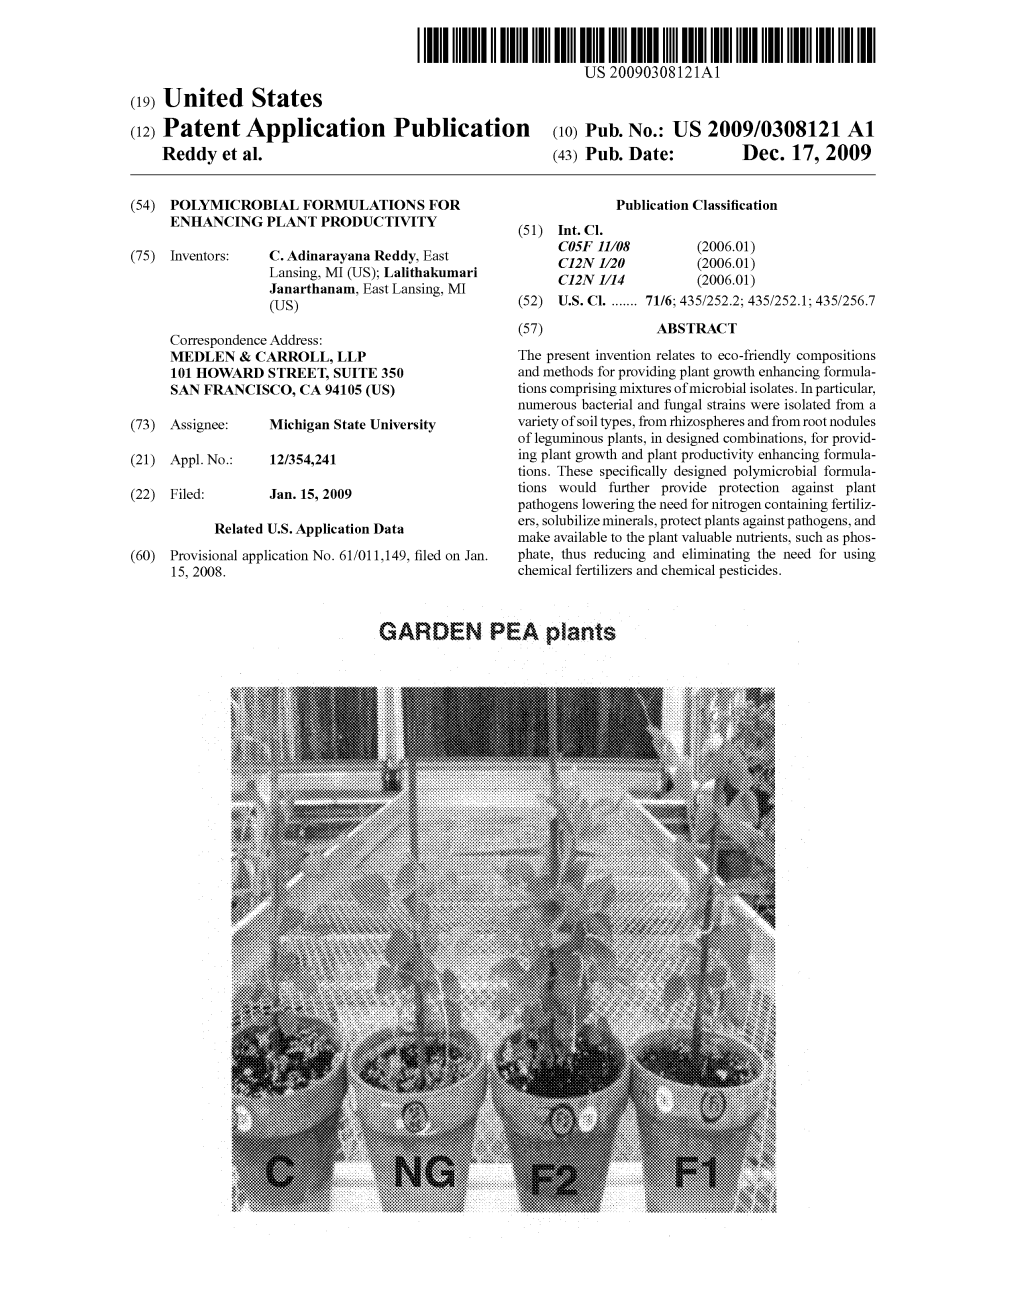 (12) Patent Application Publication (10) Pub. No.: US 2009/0308121 A1 Reddy Et Al